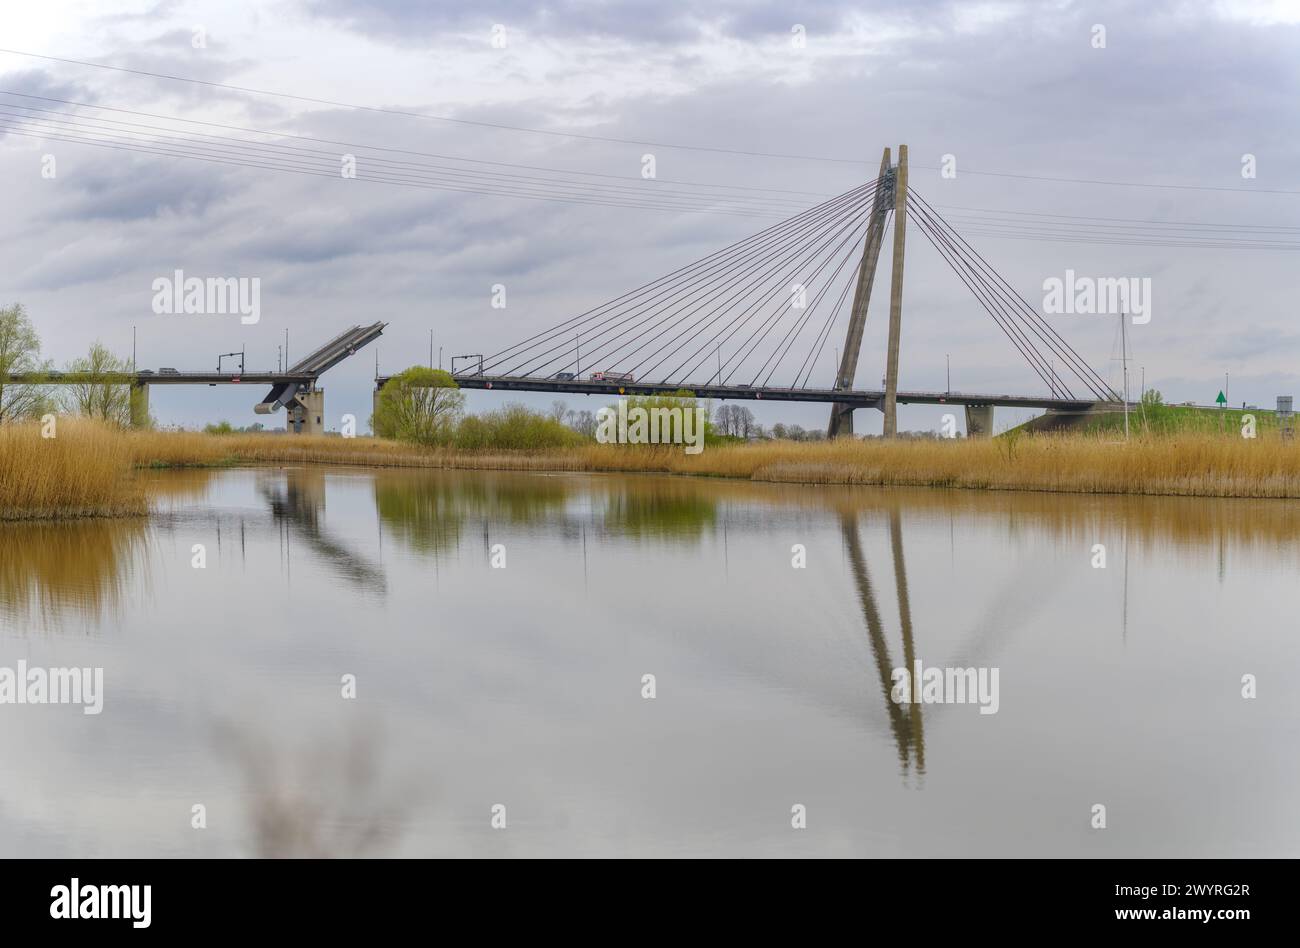 Inselbrücke (Eiland brug in niederländischer Sprache). Es handelt sich um eine Seilbrücke mit einer Unterführung von 14 m. Stockfoto